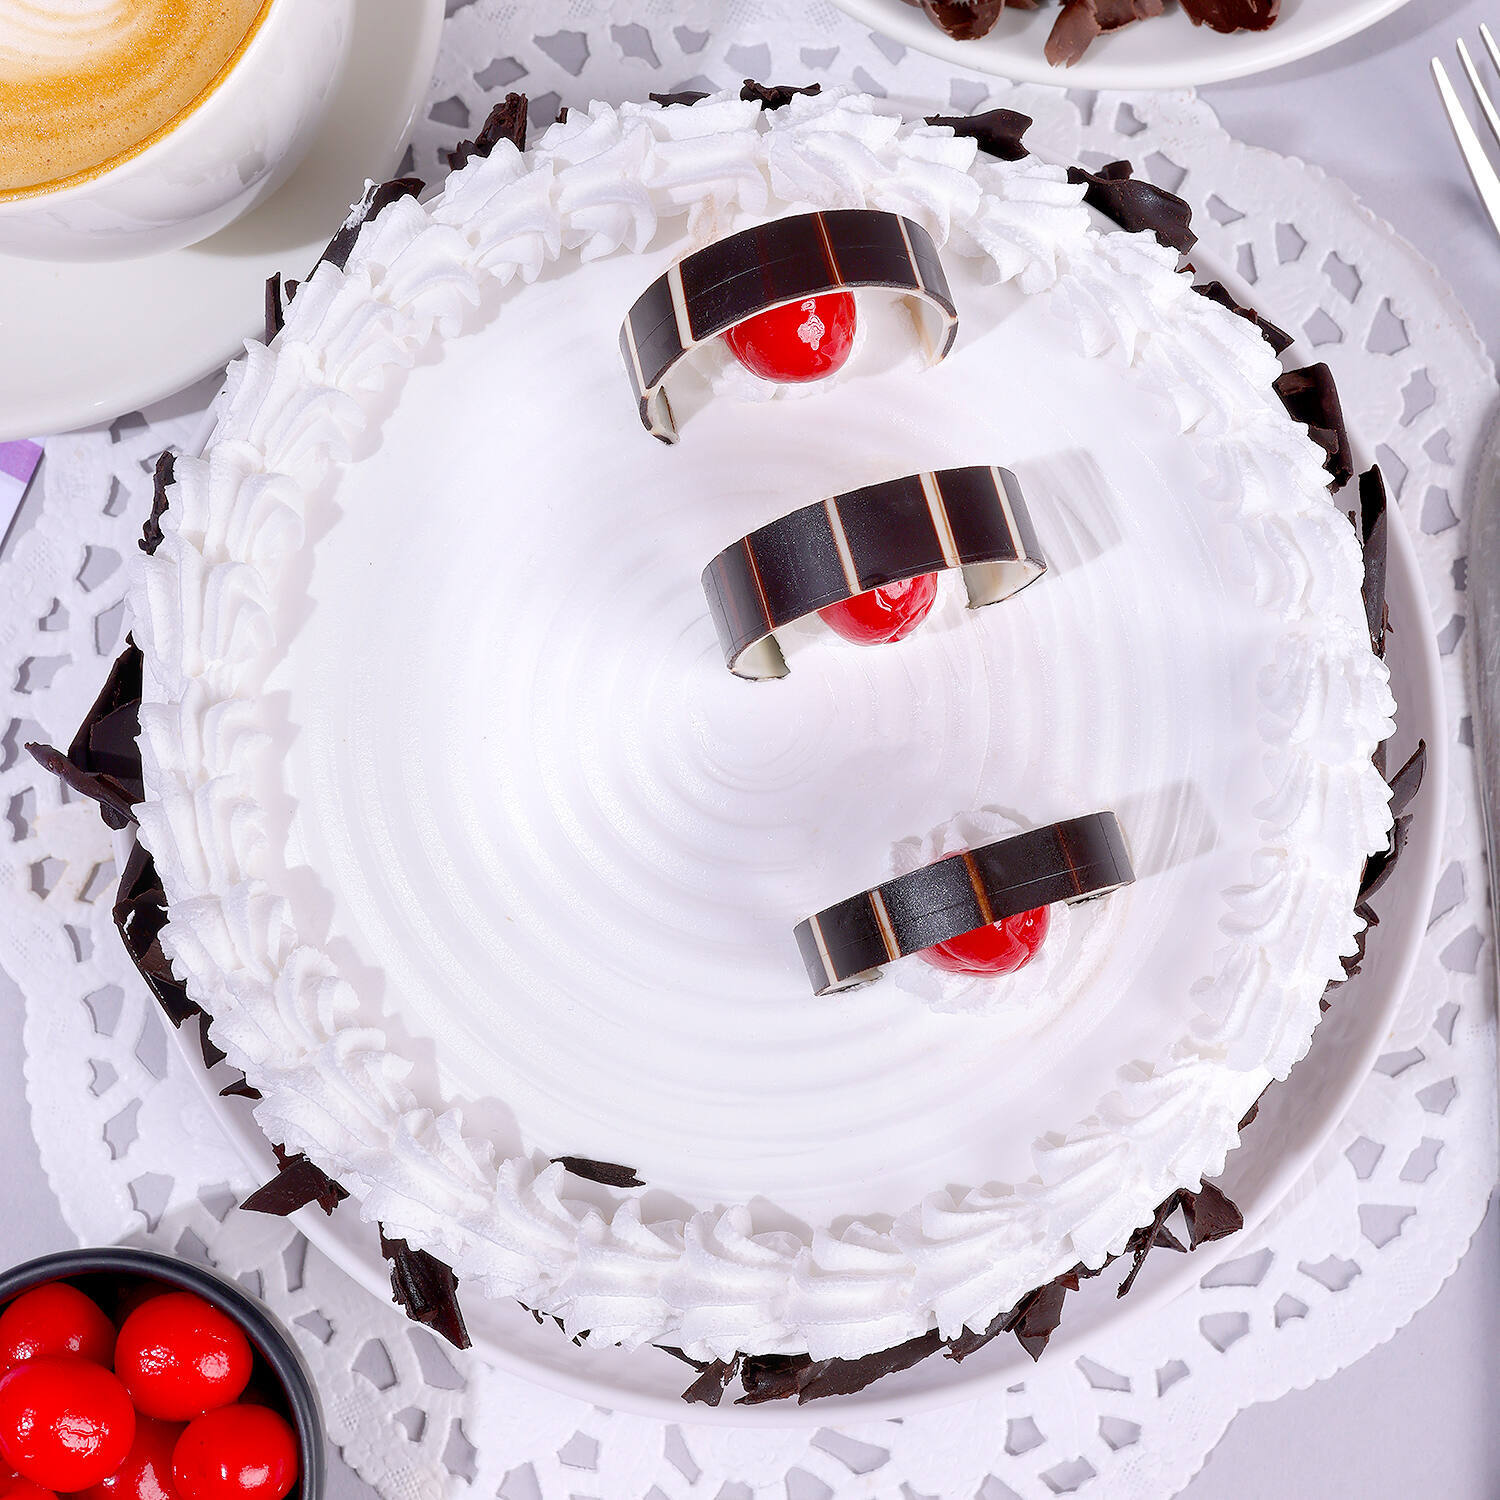 CAKES & PASTRY :: Celebration cake :: Traditional Red Velvet cake - 500gm